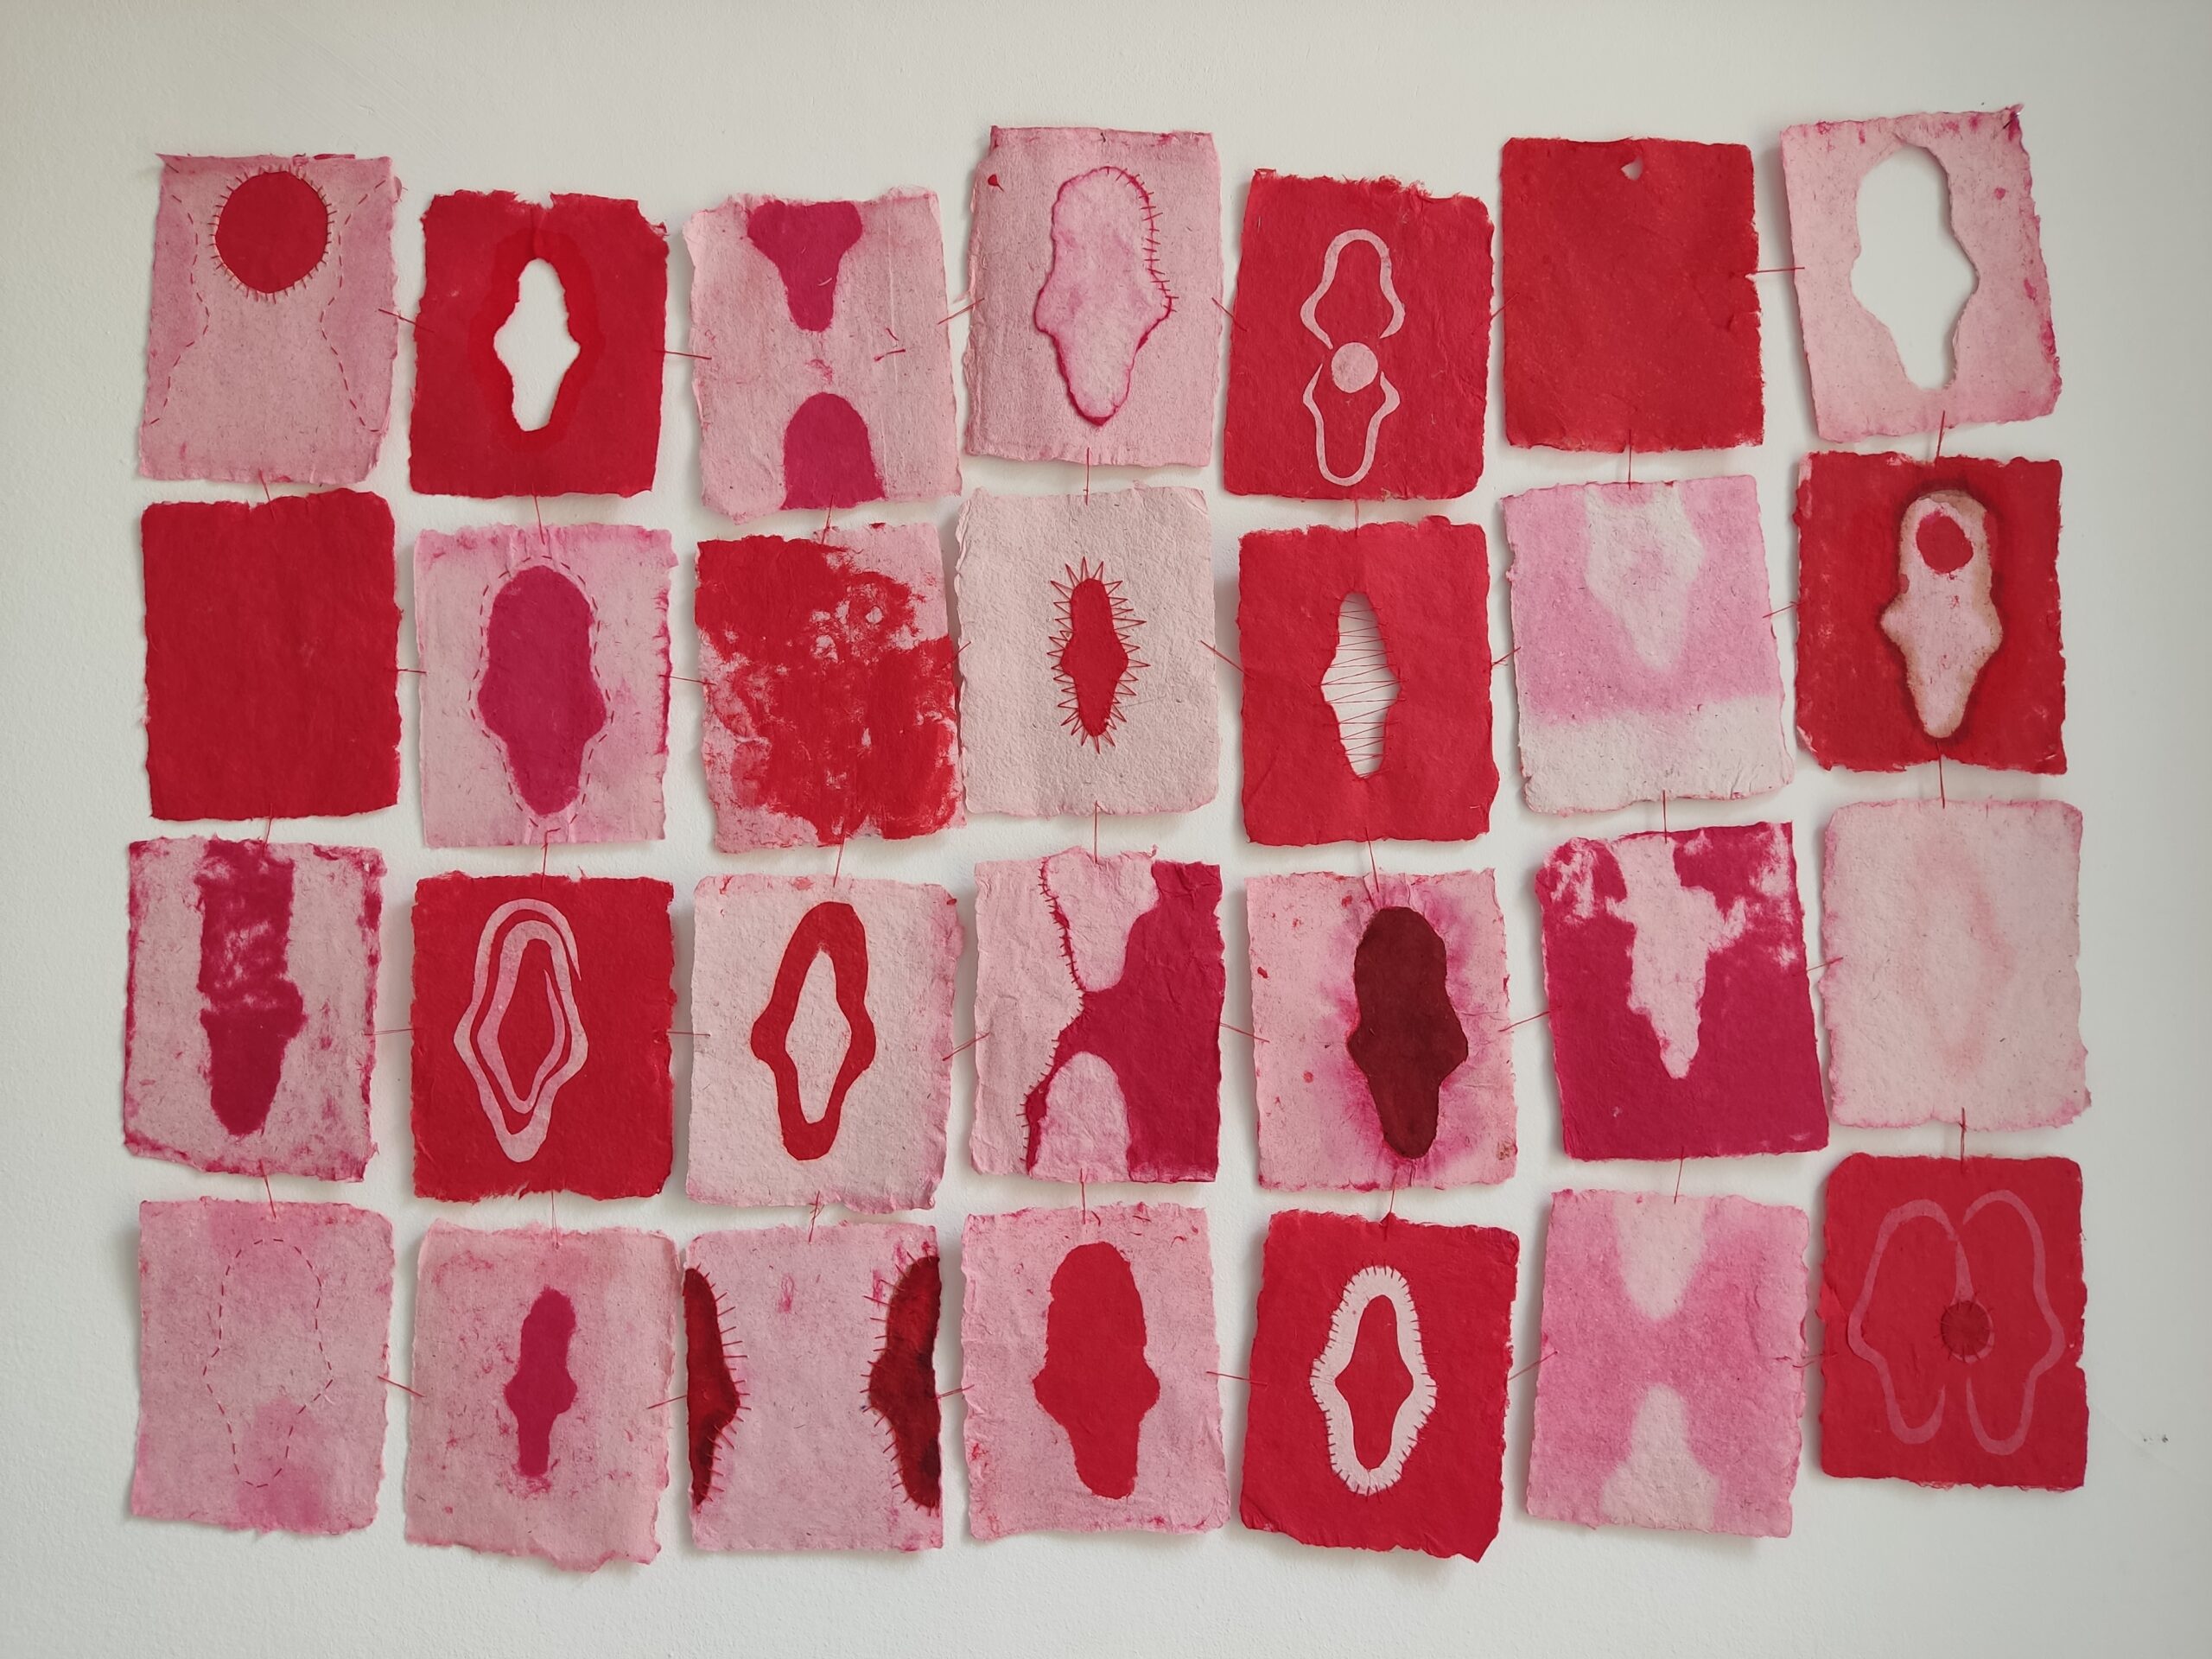  Widok pracy wykonanej z 28 arkuszy czerpanego papieru w kolorach czerwonym i białym